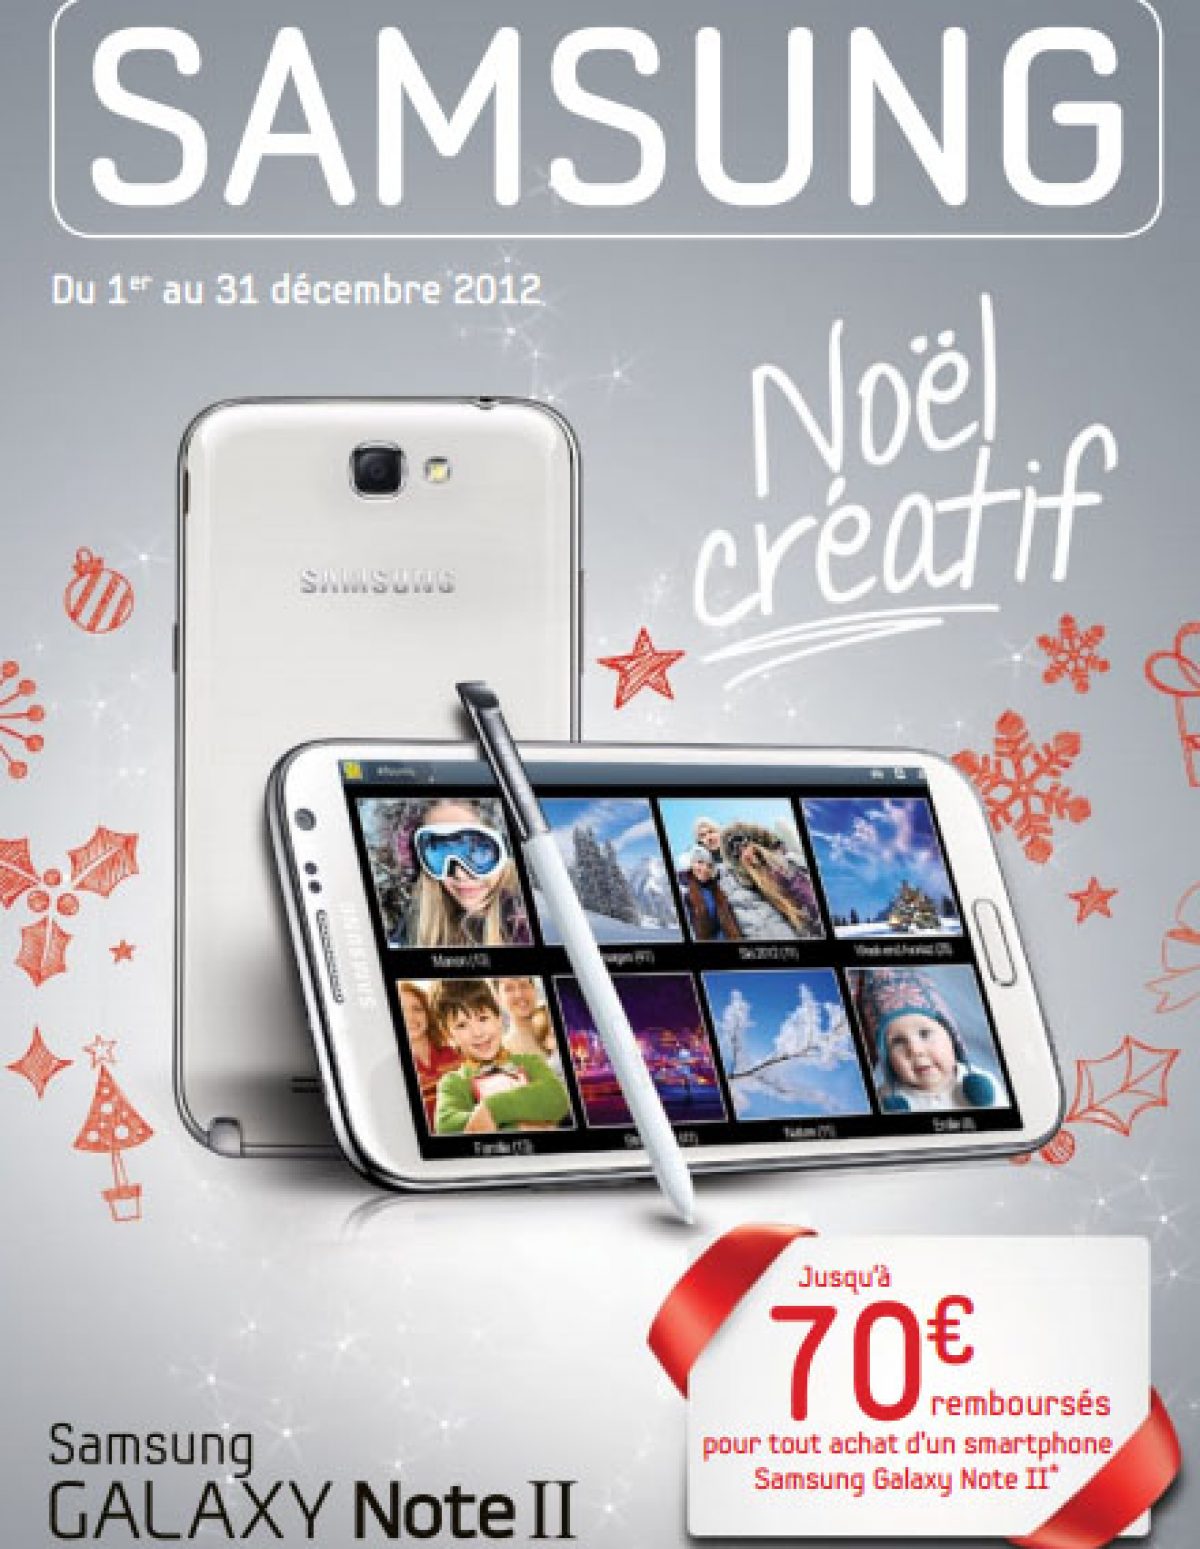 Free Mobile : L’offre de remboursement de 70€ pour le Galaxy Note II prolongée en décembre